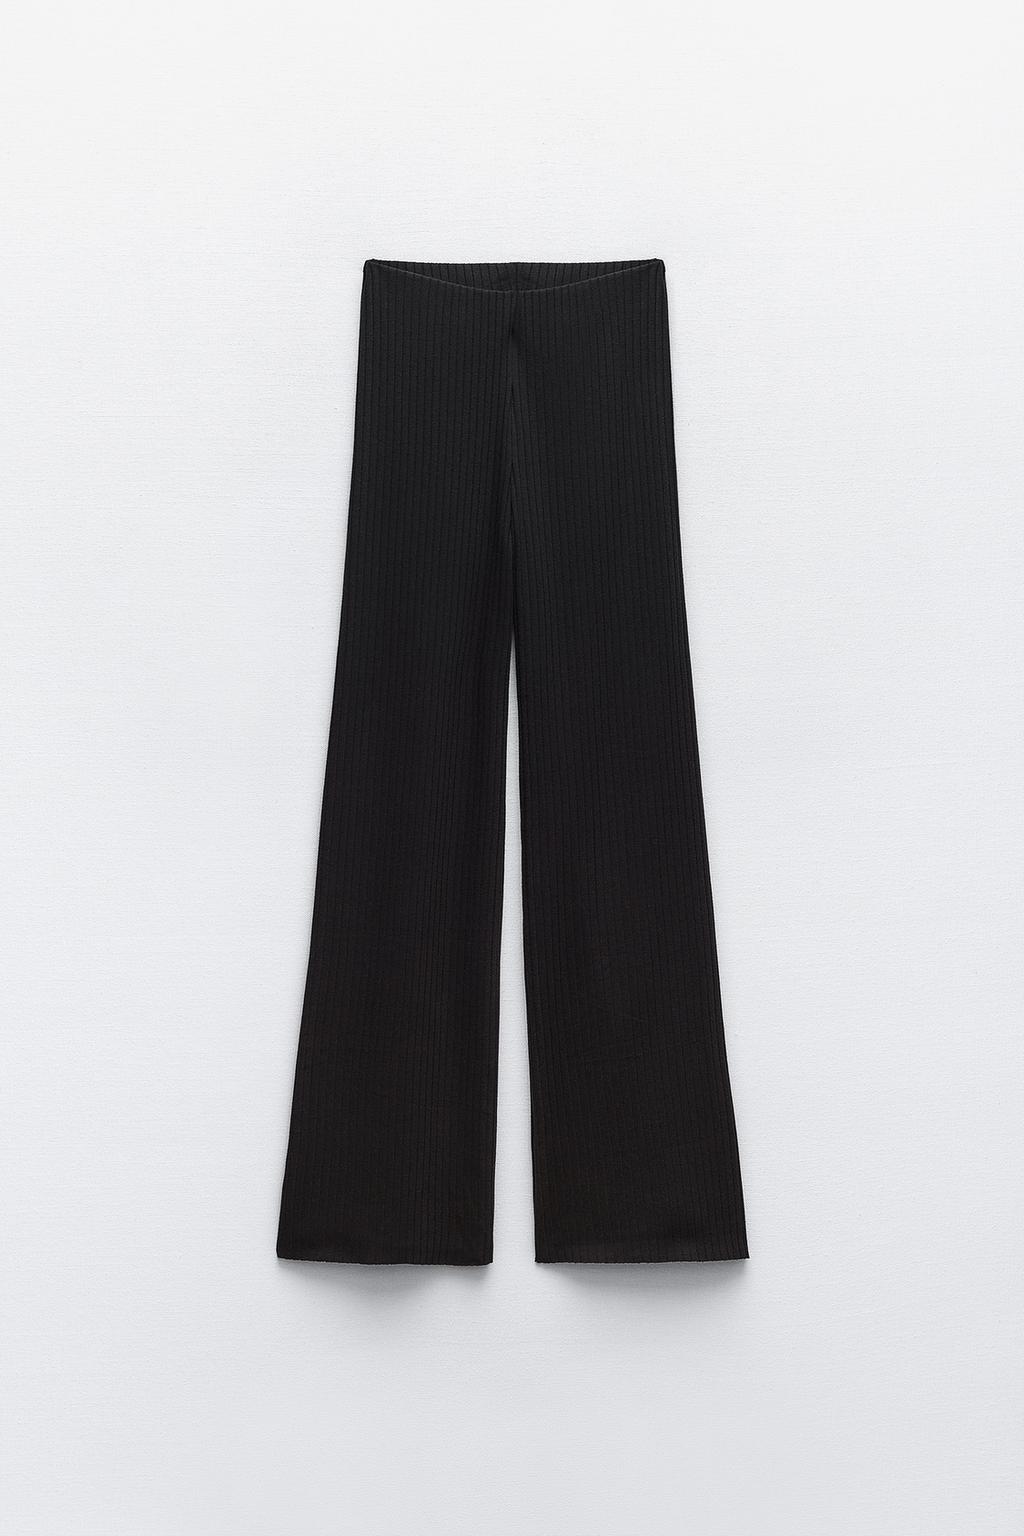 Широкие брюки в ребрику ZARA, черный брюки женские прямые с завышенной талией базовые цветные непрозрачные драпированные повседневные белые брюки с широкими штанинами подхо